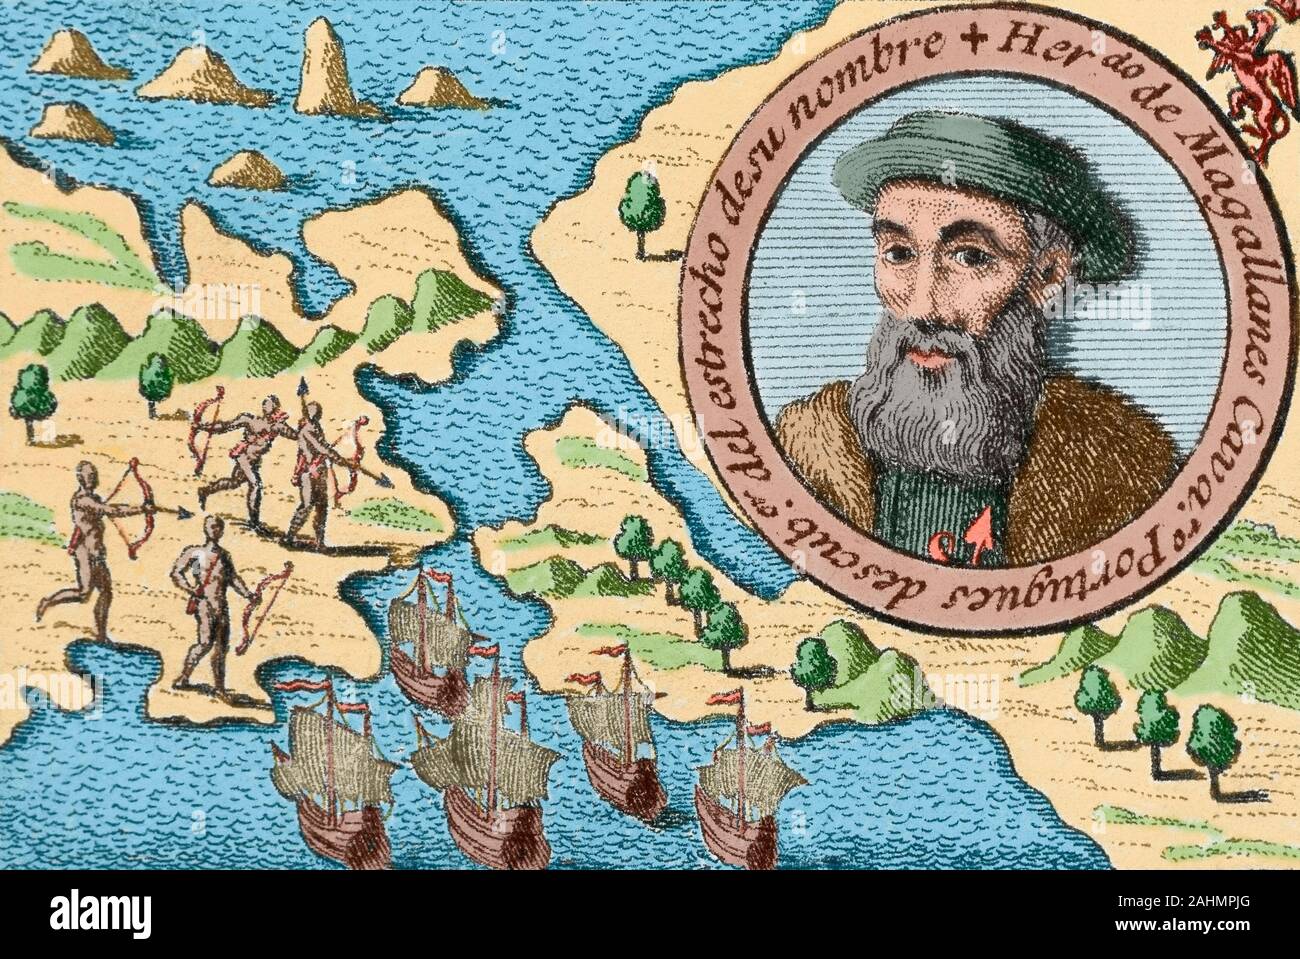 Ferdinand Magellan (1480-1521). Portugiesische Entdecker, der die spanischen Expedition nach Ostindien führte von 1519 bis 1522. Magellan stirbt Schaukampf mit den Eingeborenen. Tod von Magellan auf der Insel Mactan (Philippinen), am 27. April 1521. Gravur, 1726. Später Färbung. Stockfoto